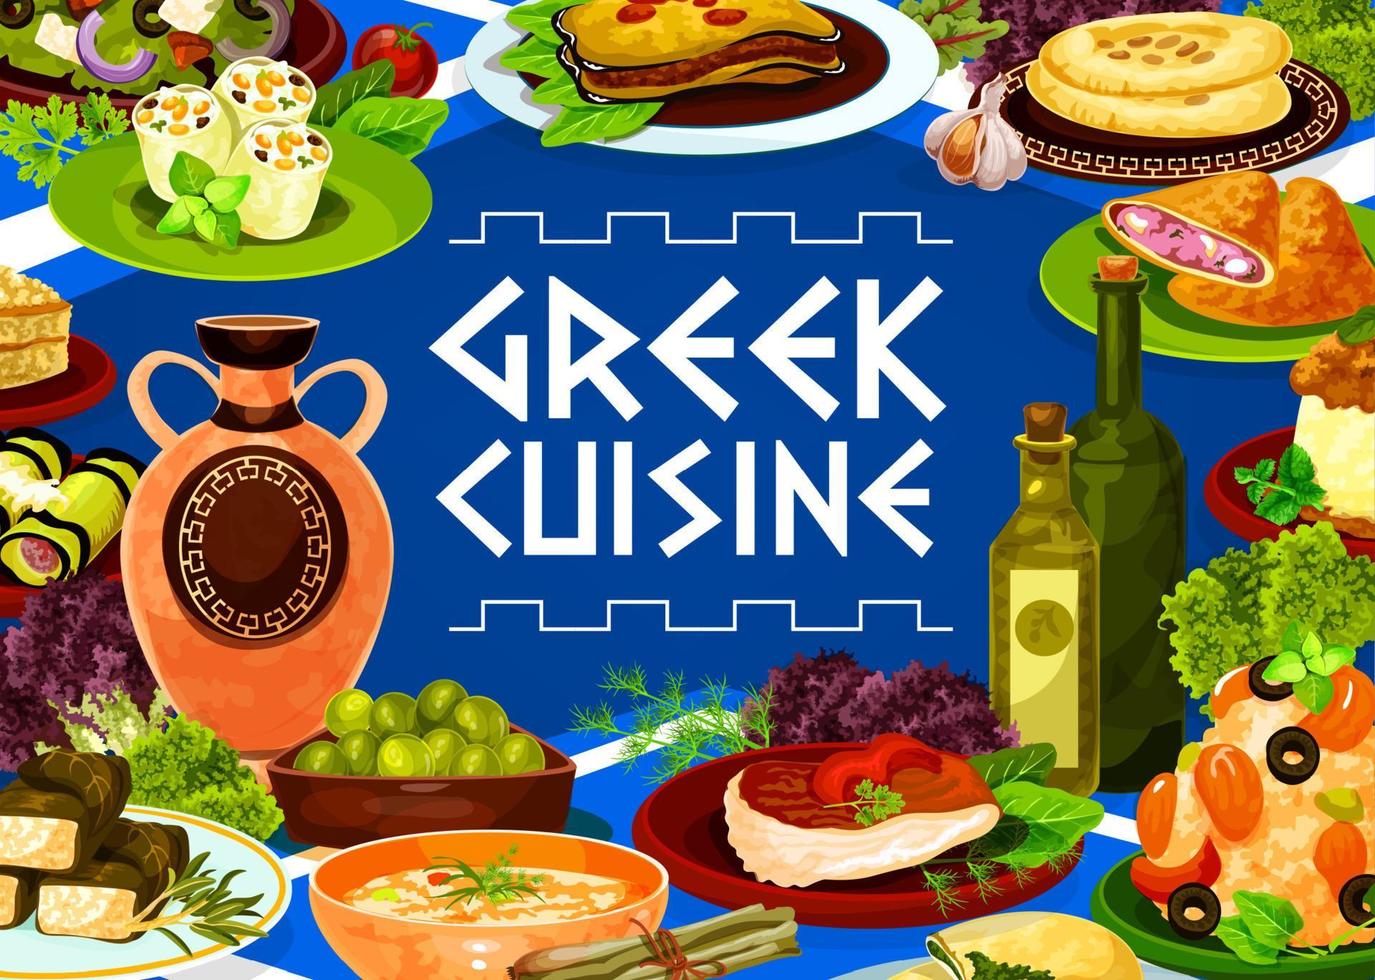 Grieks olijf- salade, vlees, zeevruchten risotto gerechten vector